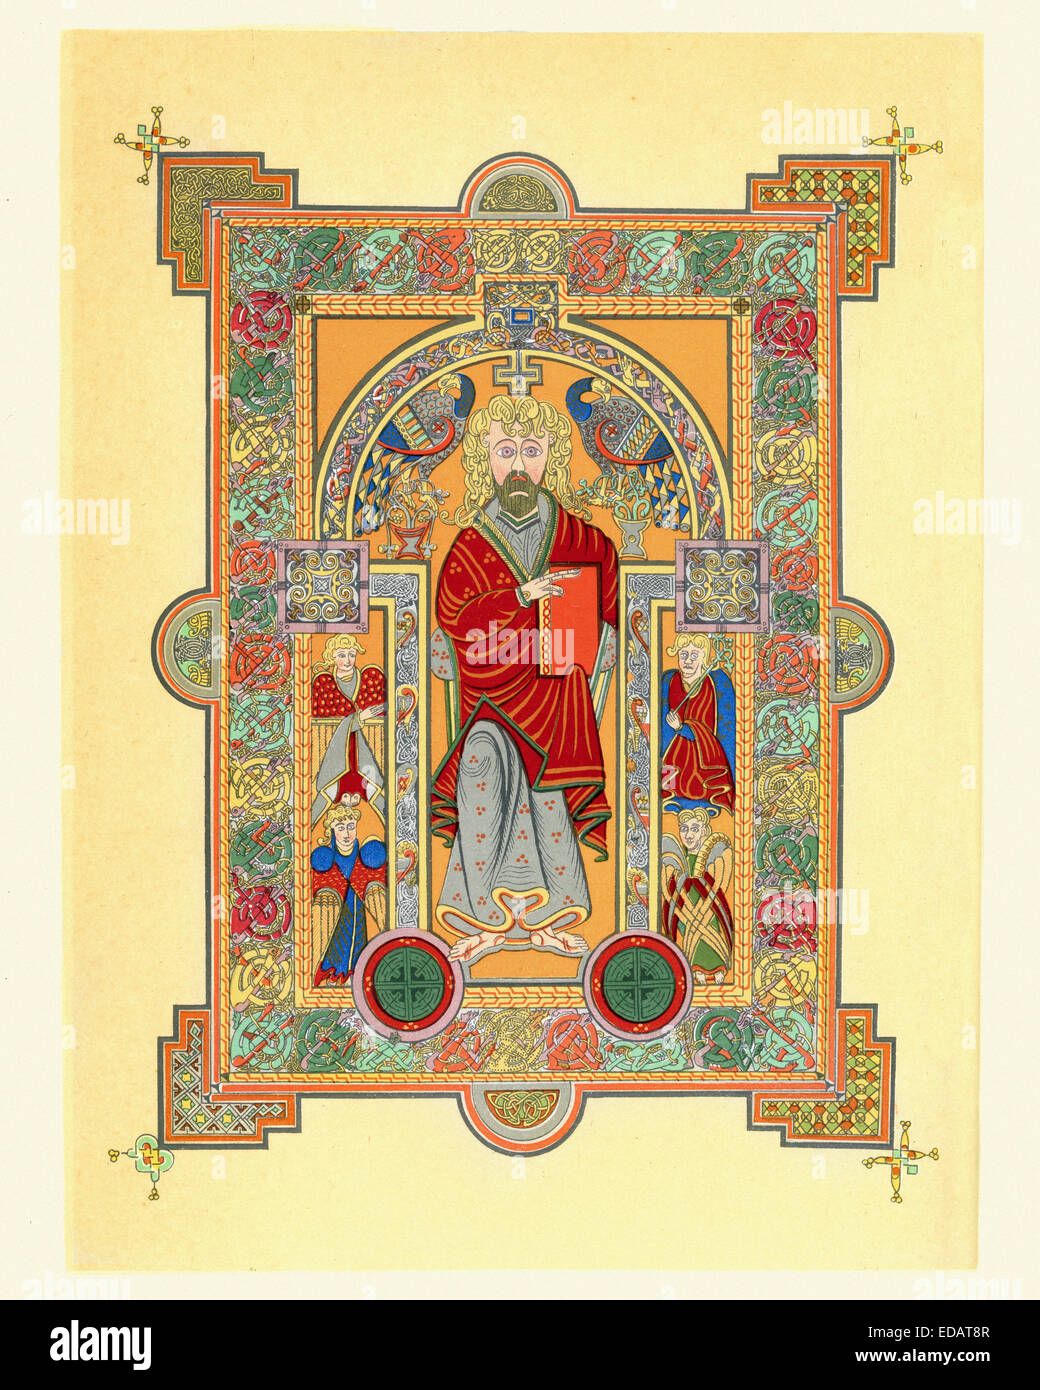 Jesus Christus thront, aus dem Book of Kells. Das Book of Kells ist eine illuminierte Handschrift Evangeliar in lateinischer Sprache ca erstellt. Stockfoto